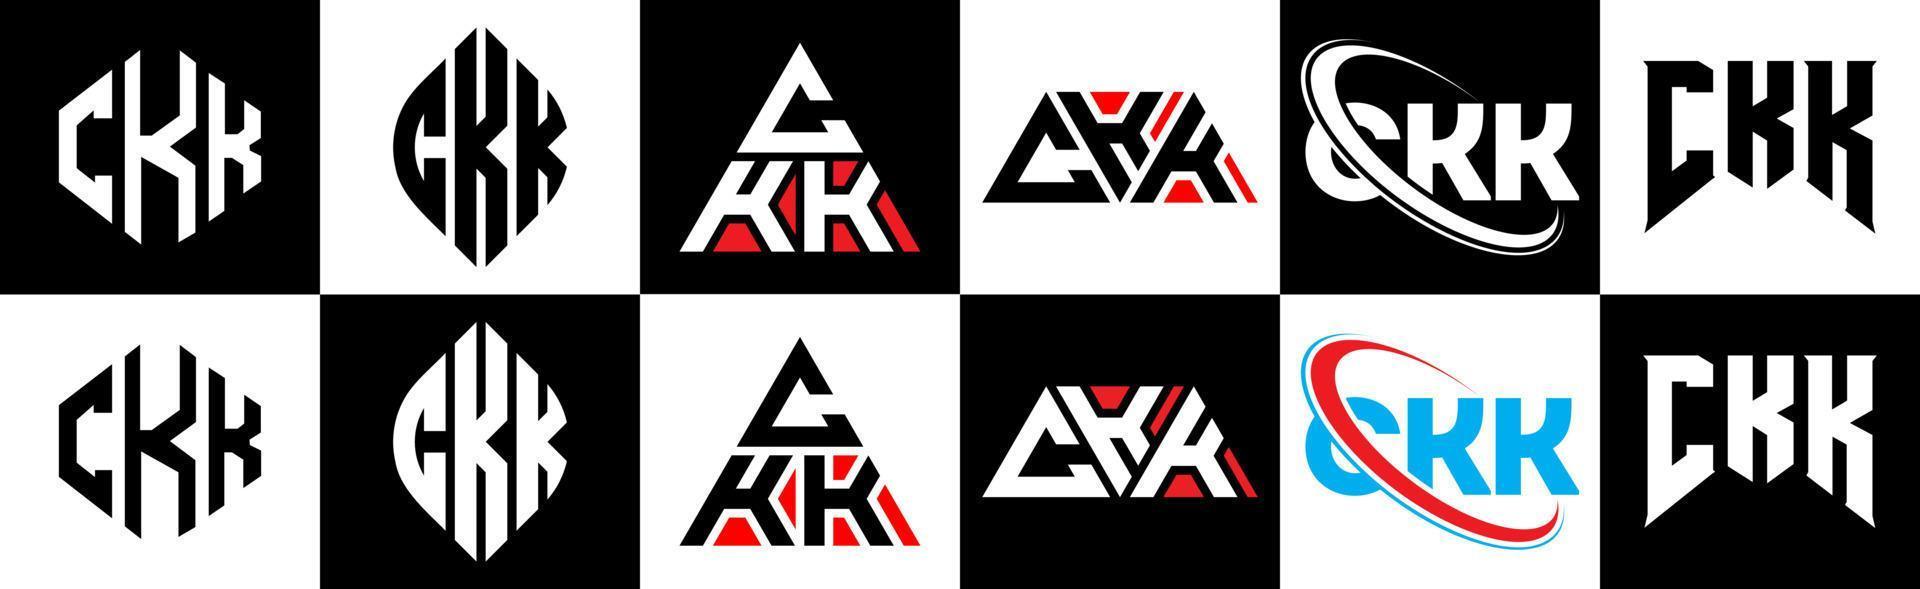 Diseño de logotipo de letra ckk en seis estilos. polígono ckk, círculo, triángulo, hexágono, estilo plano y simple con logotipo de letra de variación de color blanco y negro en una mesa de trabajo. logotipo minimalista y clásico de ckk vector